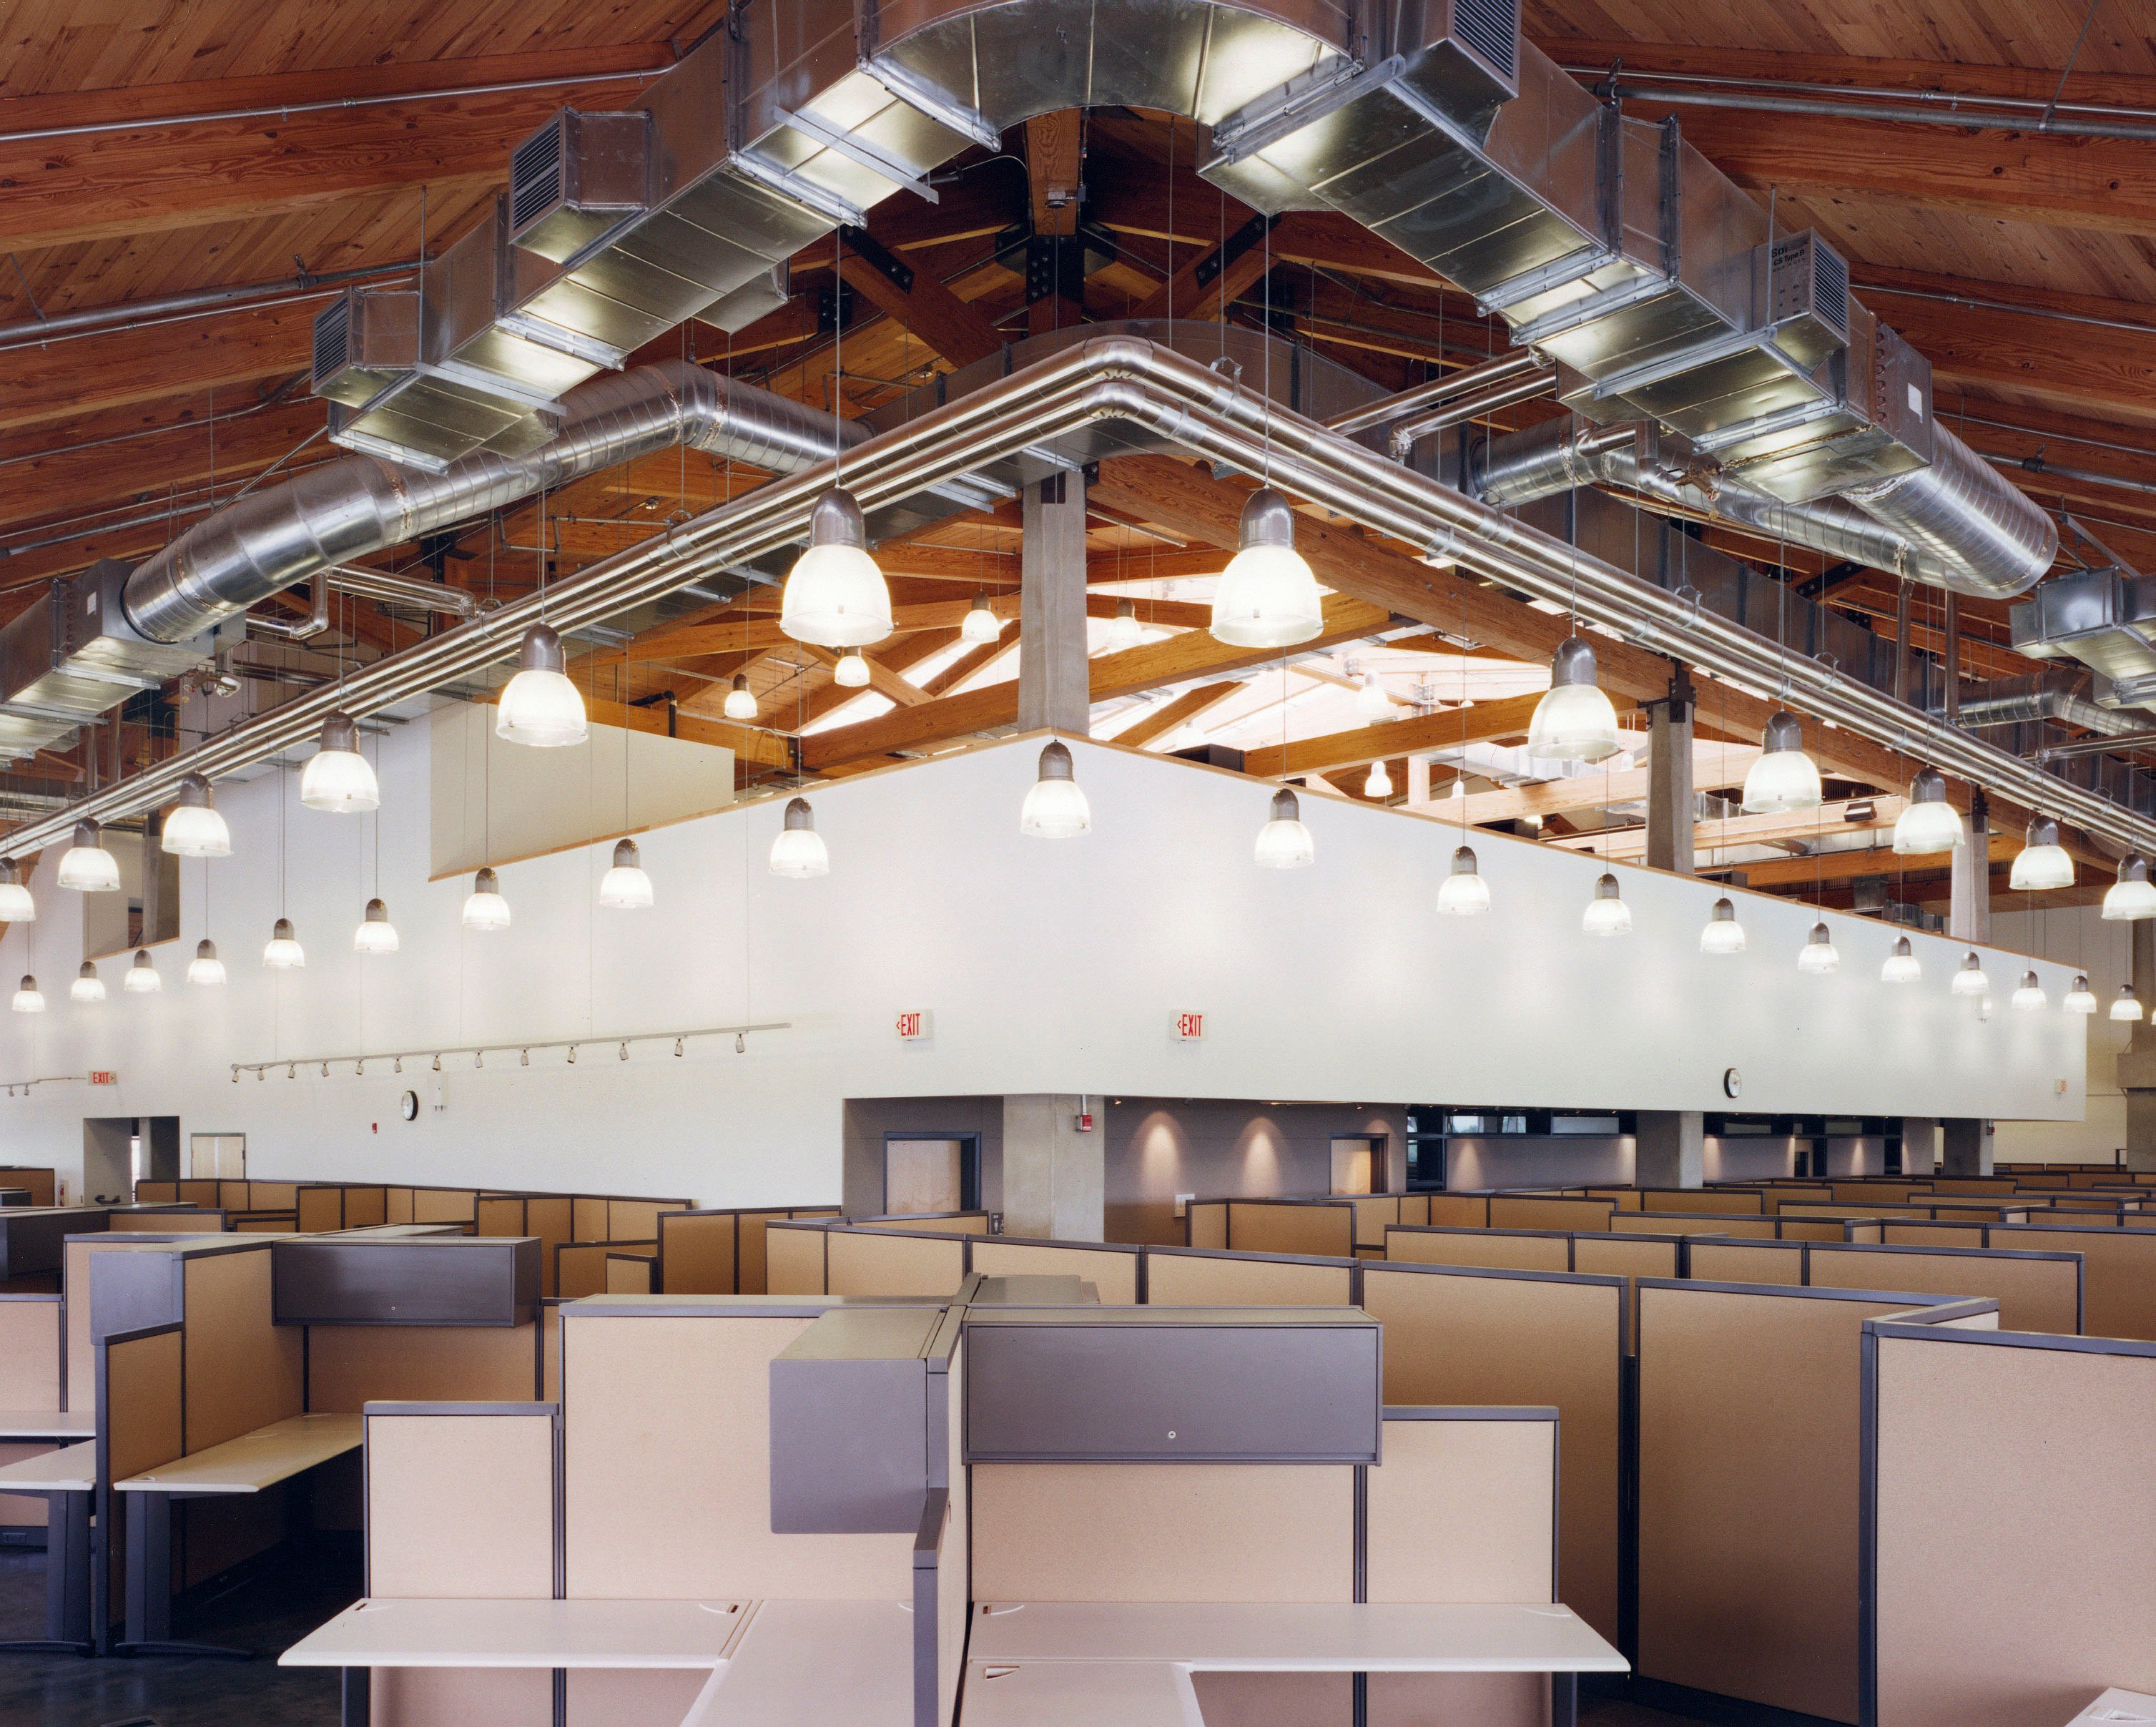 UNCG studioarts_50112D_interior ceiling trusses 1